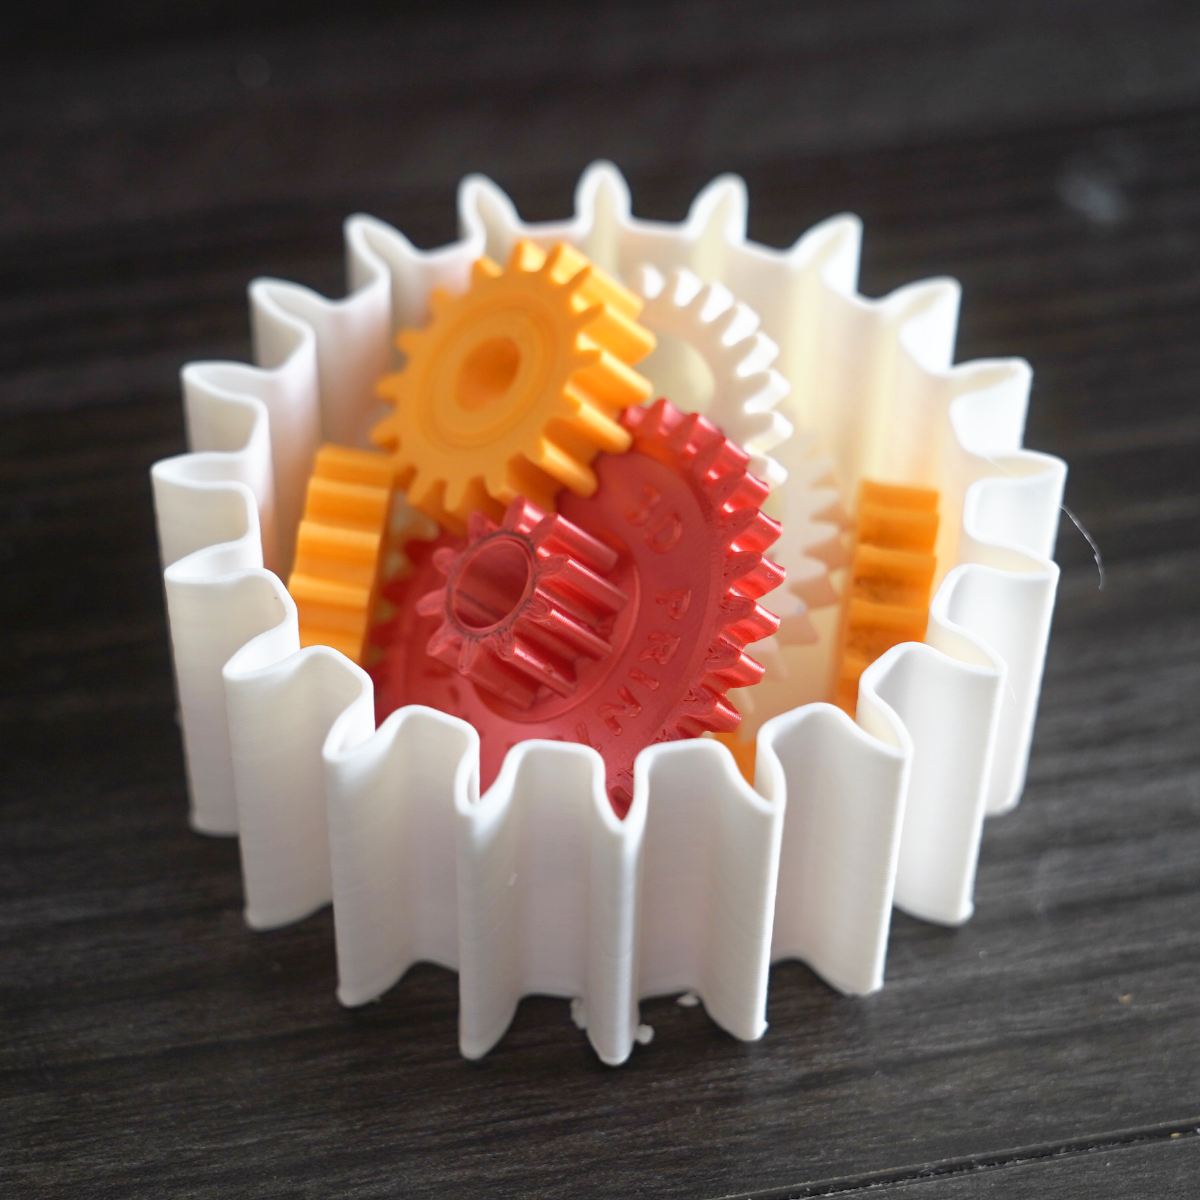 Irregular Shaped Gears – 3D Printer Academy